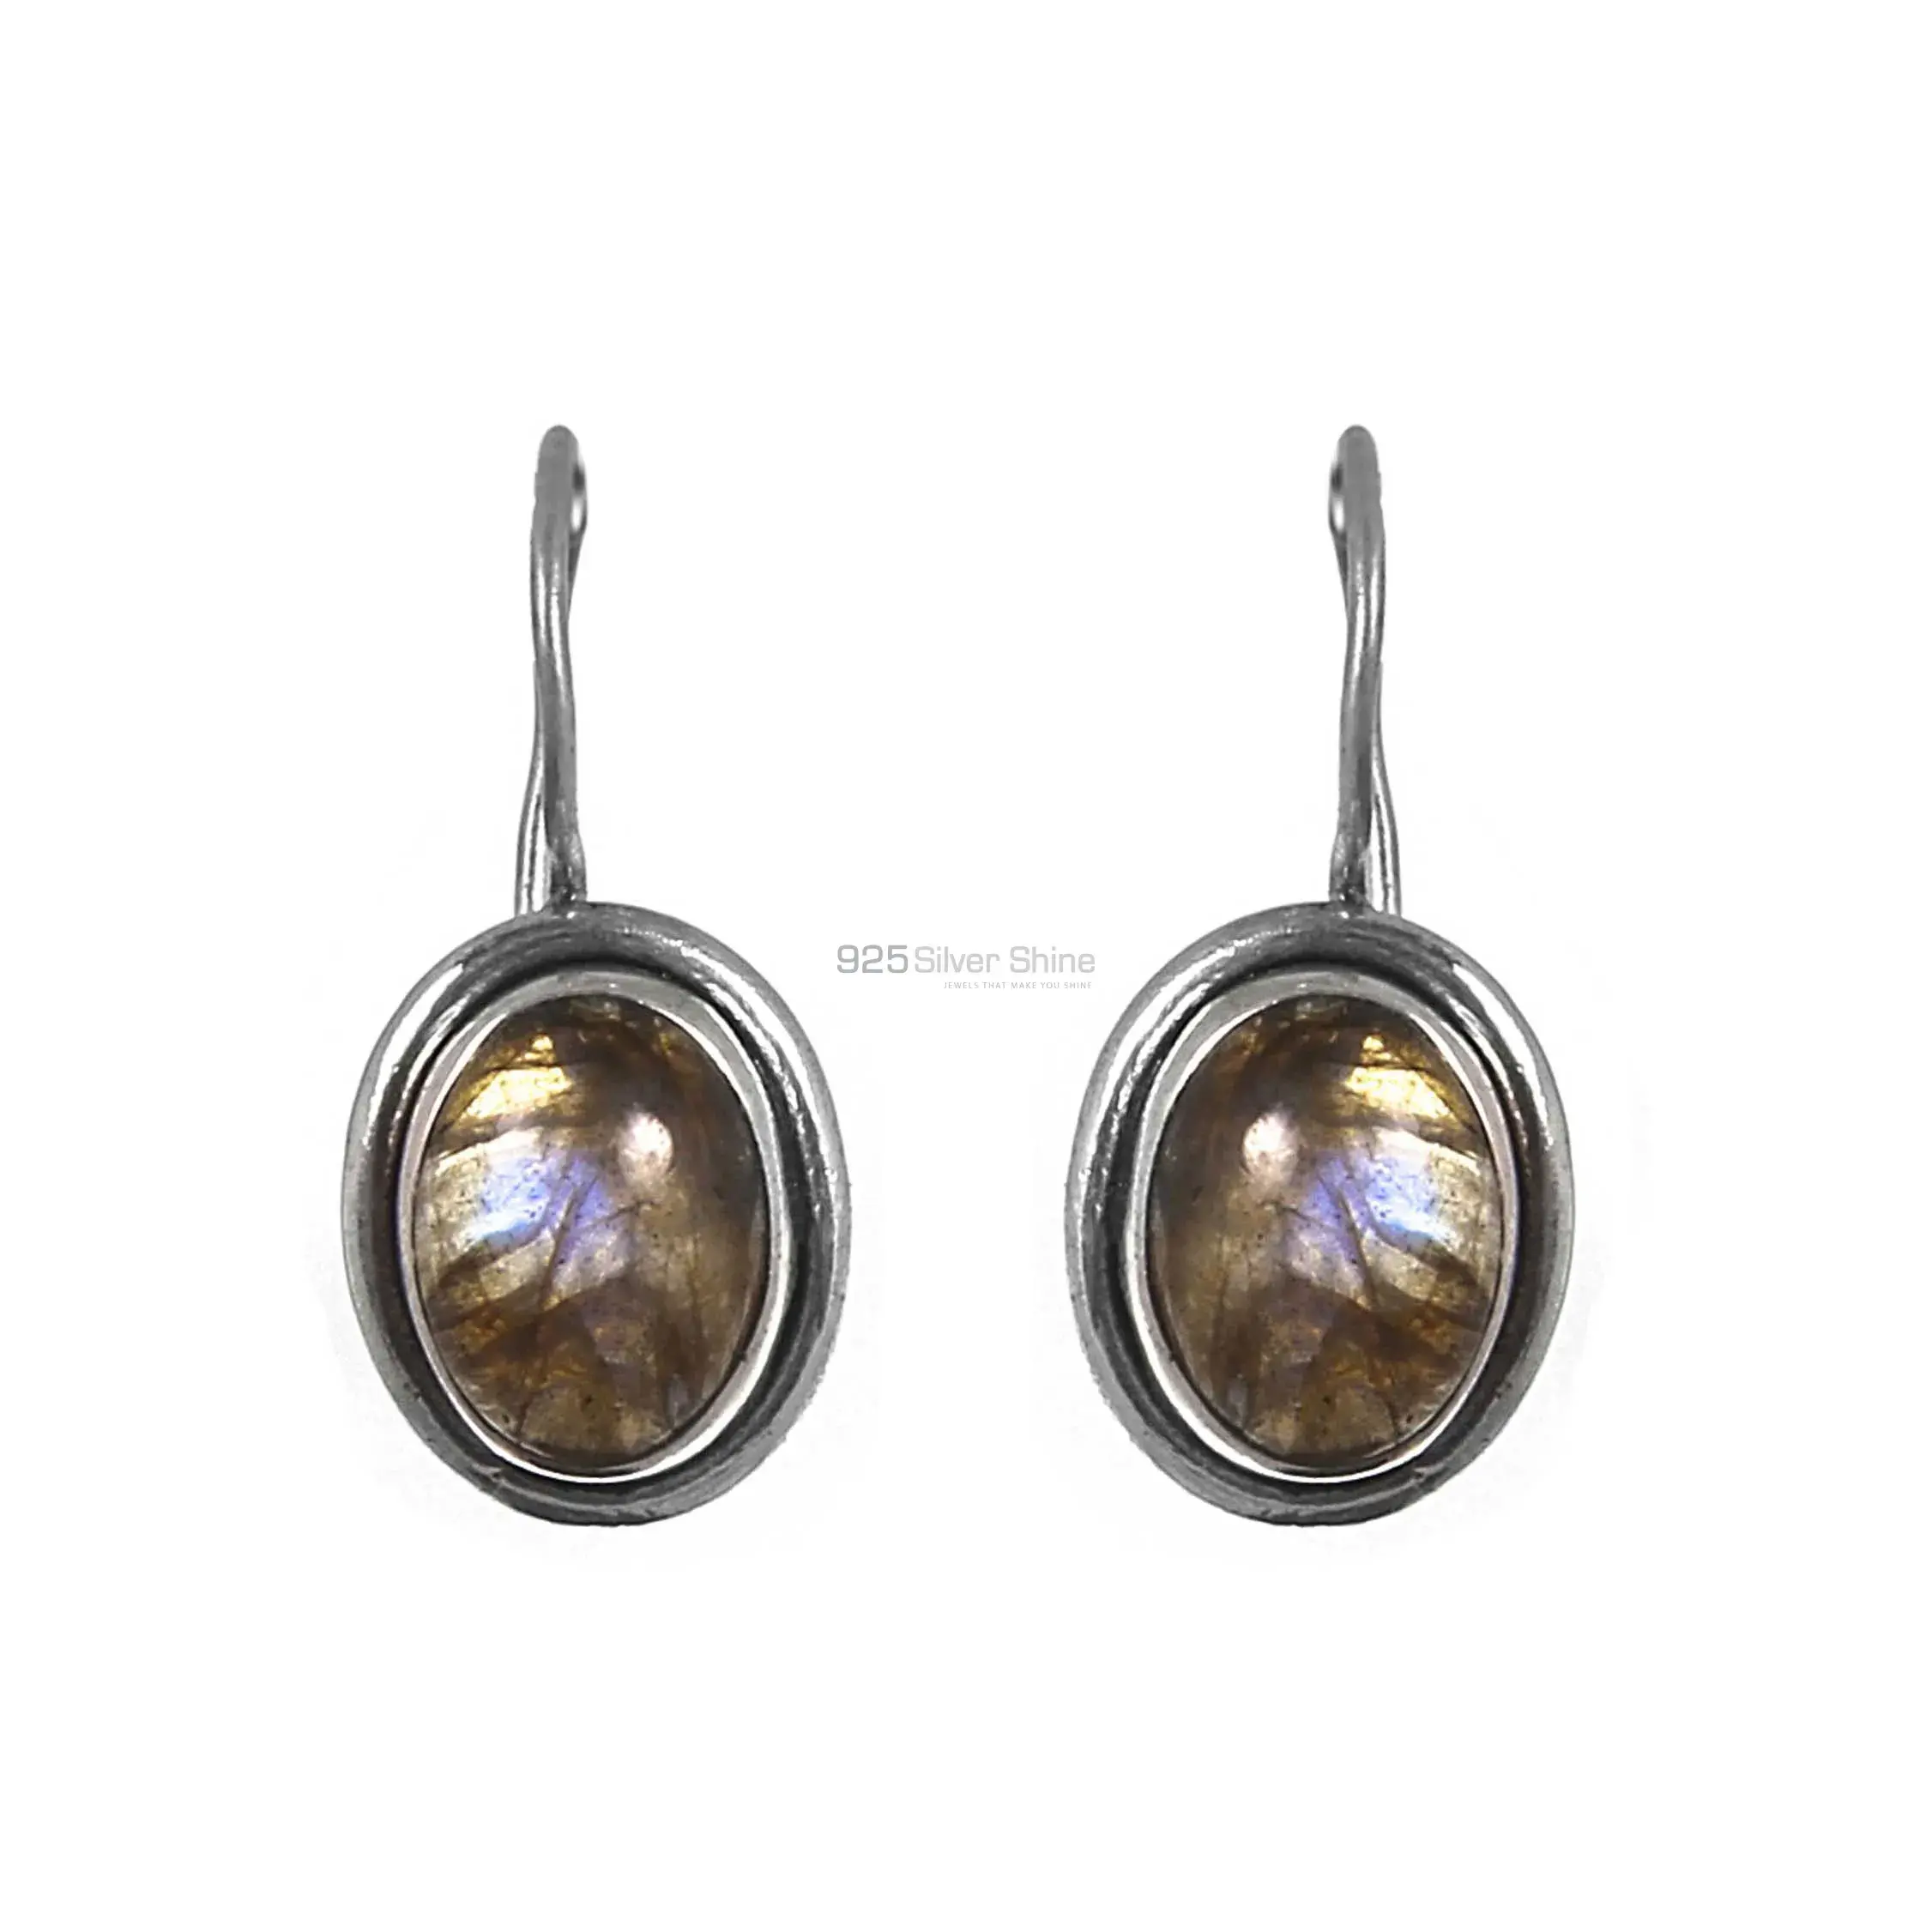 Wholesale Labradorite Gemstone Earrings In Fine Sterling Silver Jewelry 925SE205